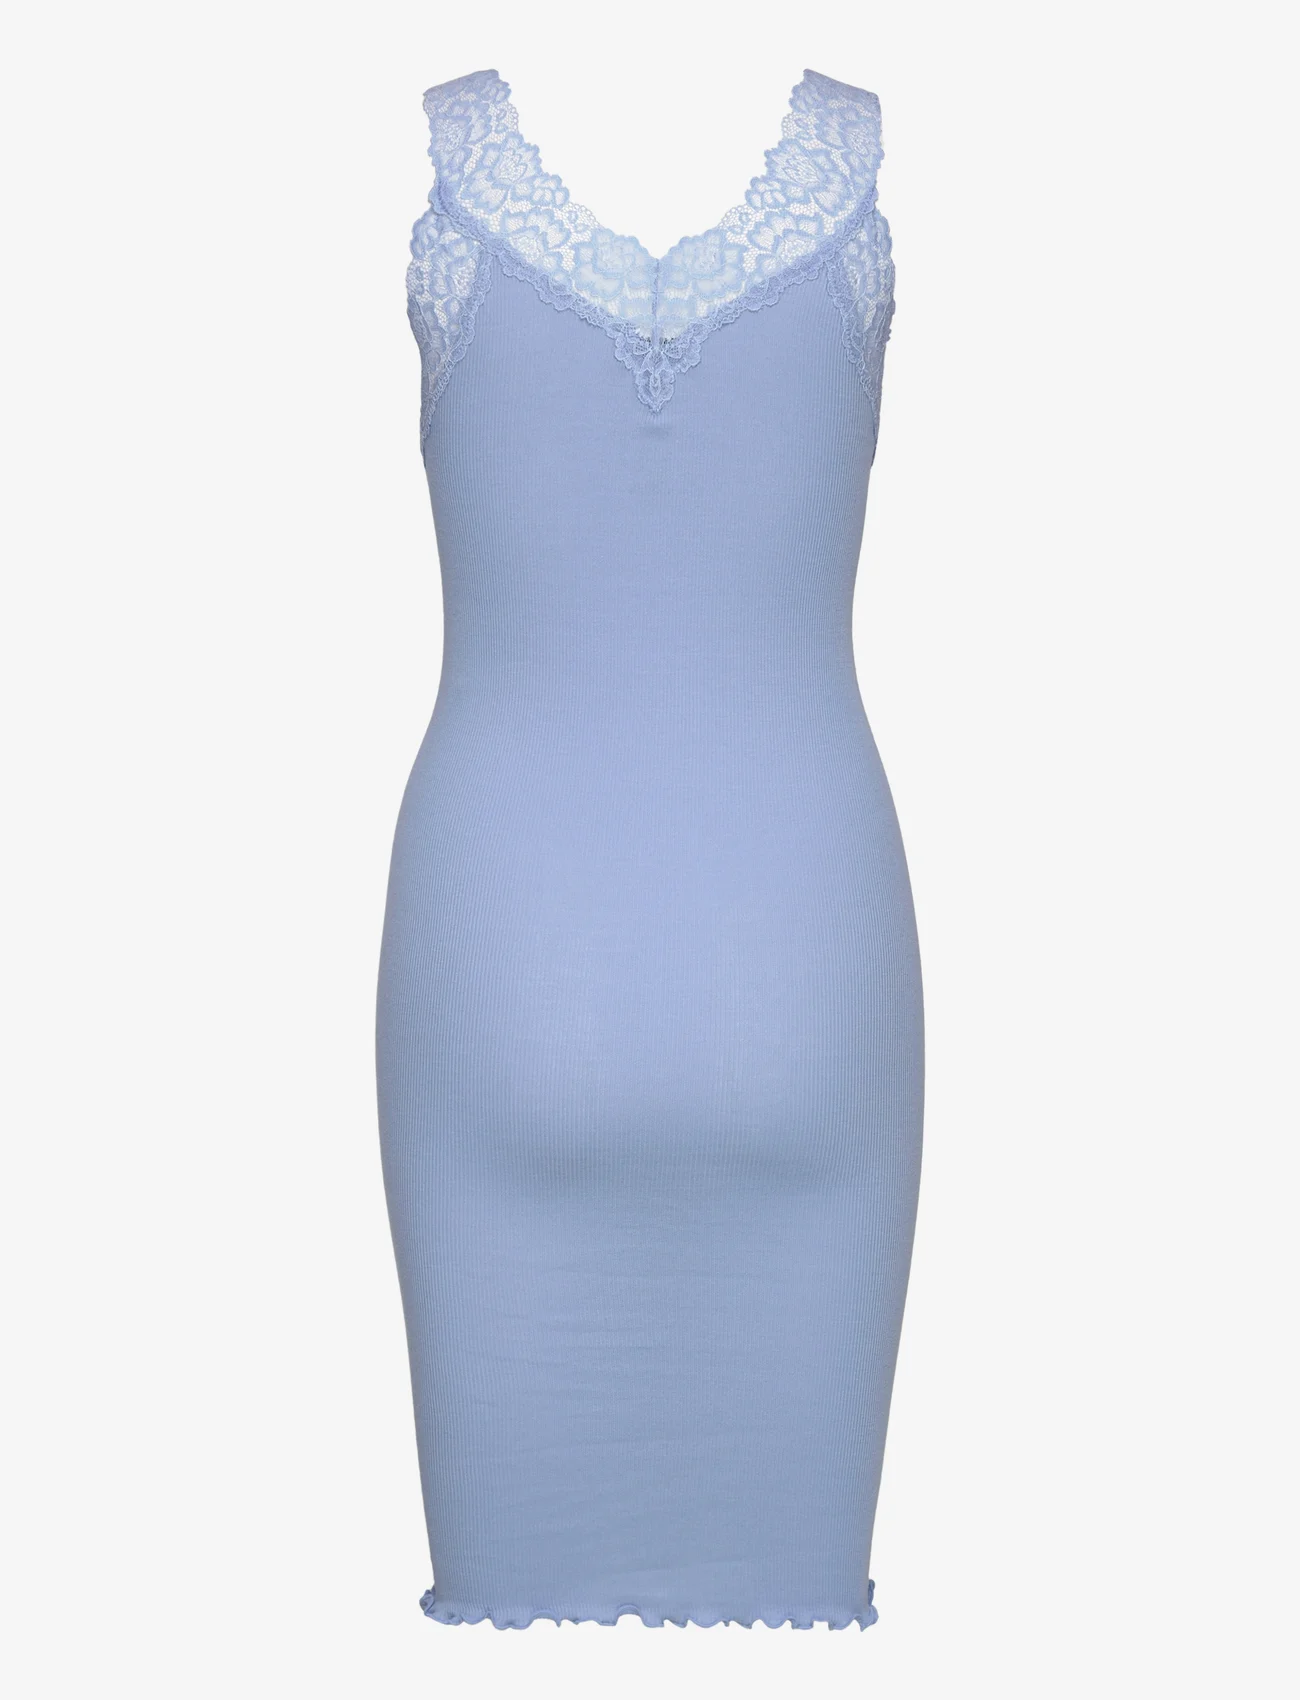 Rosemunde - Organic dress - etuikleider - blue allure - 1